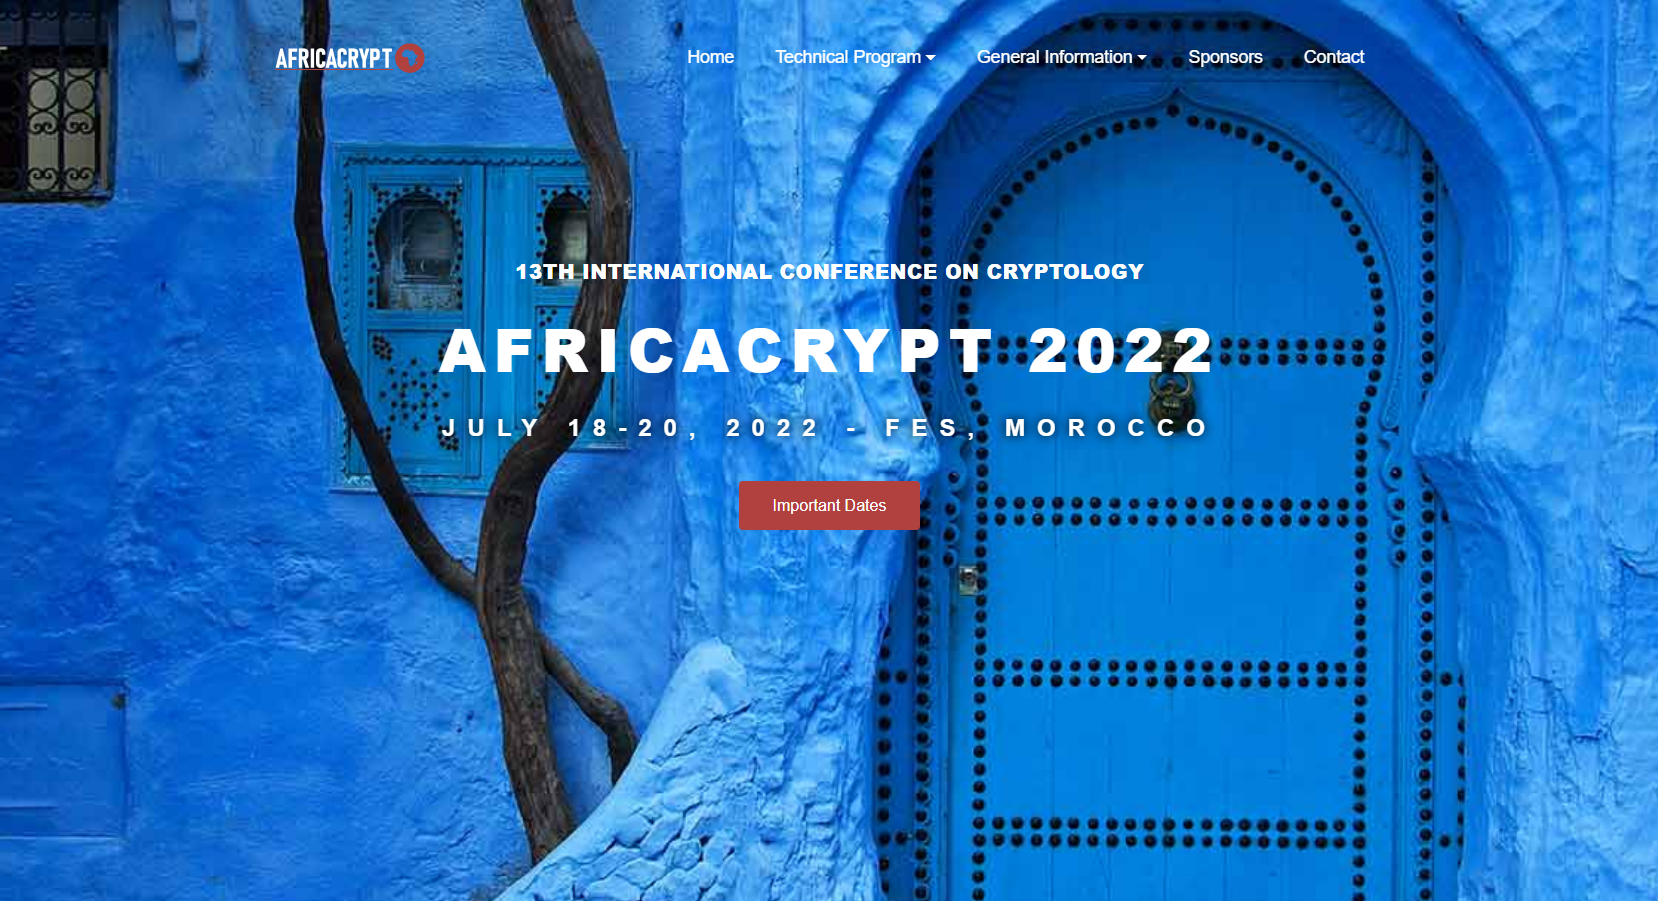 AfricaCrypt